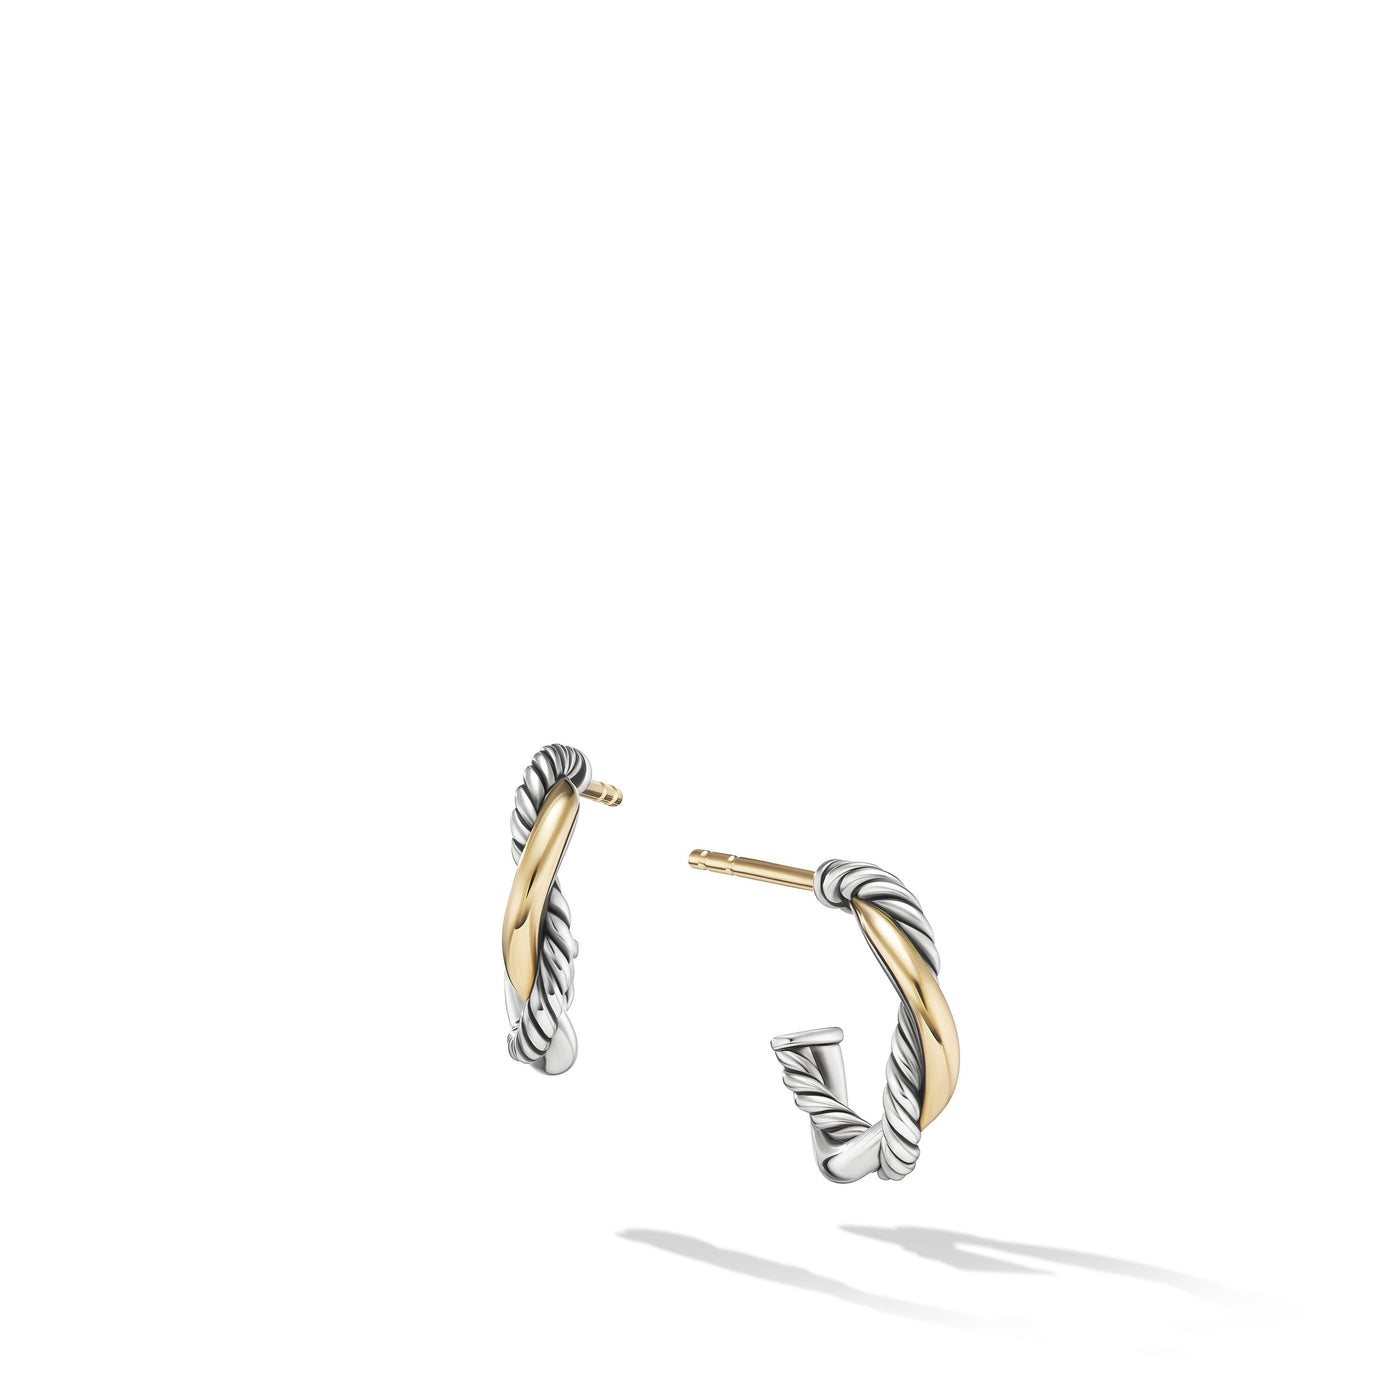 Petite Infinity Huggie Hoop Earrings in Sterling Silver with 14K Yellow Gold\, 3mm